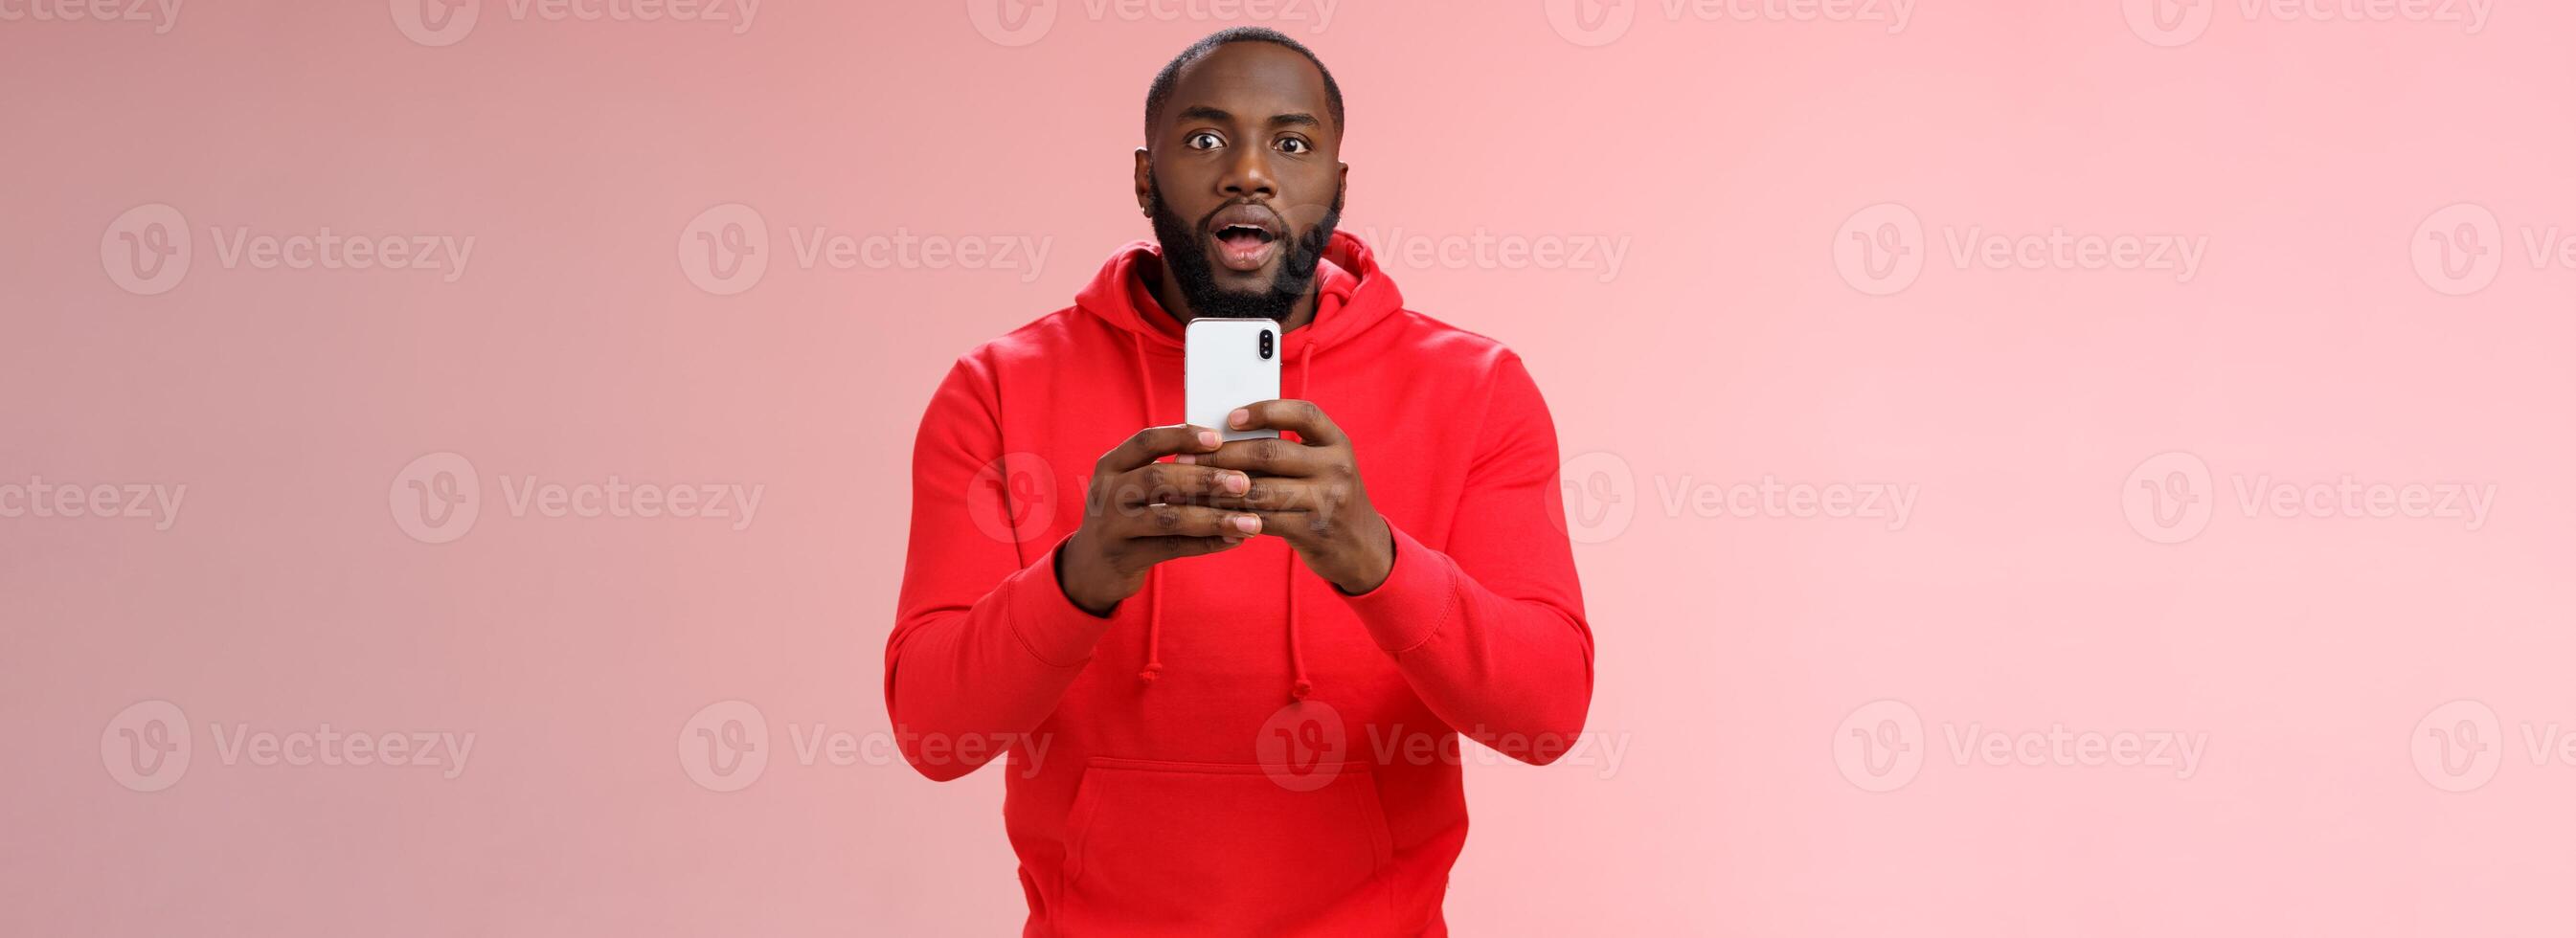 onder de indruk gefocust knap Afrikaanse Amerikaans gebaard vent op zoek gefascineerd Holding smartphone opname video vastleggen geweldig gevecht, verbreden ogen nieuwsgierig verrast, staand roze achtergrond foto